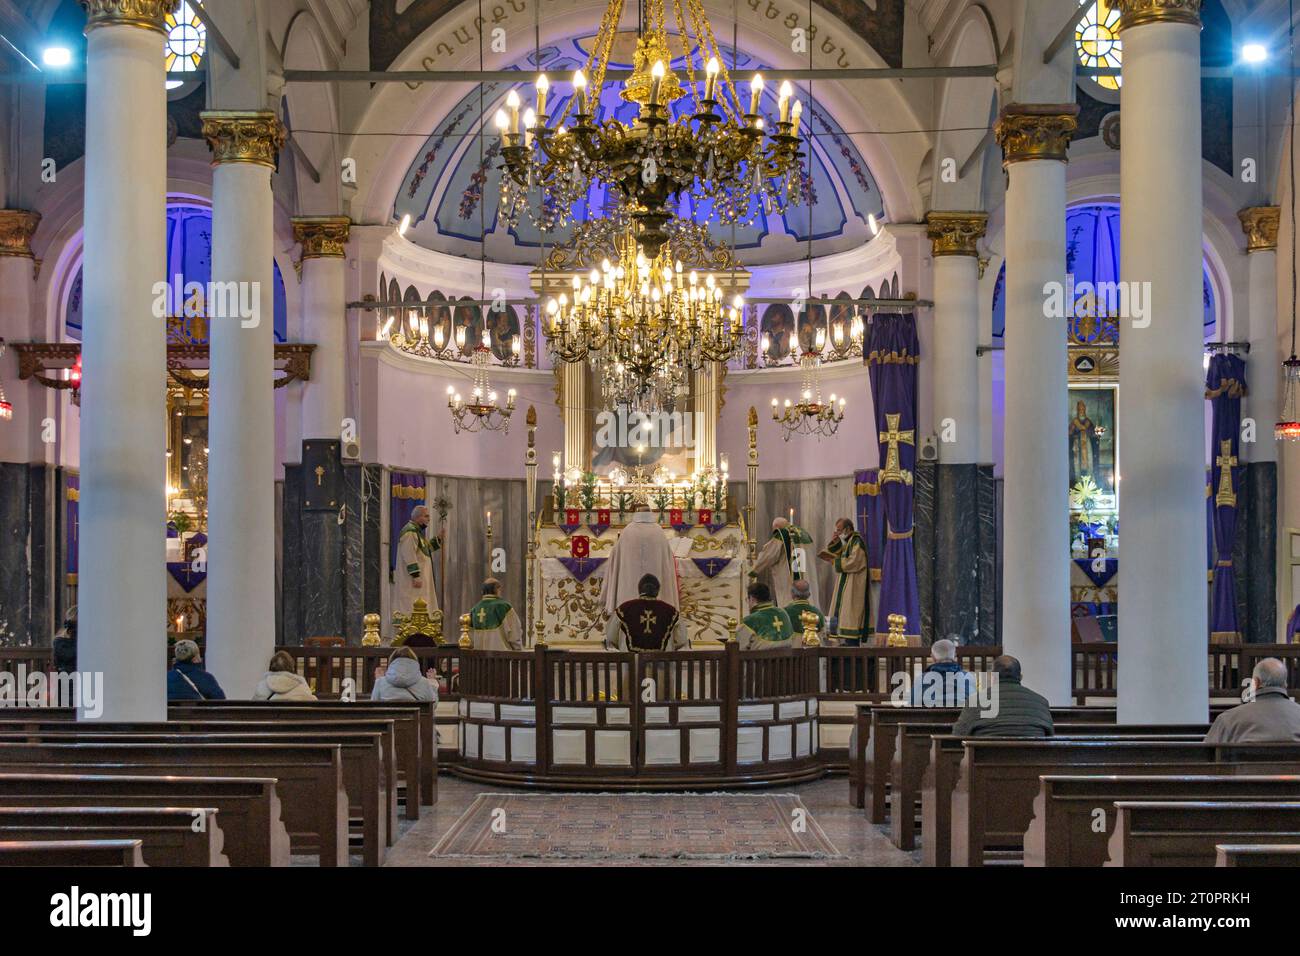 Église orthodoxe arménienne Surp Hiresdagabet dans le district de Fatih à Istanbul, Turquie Banque D'Images